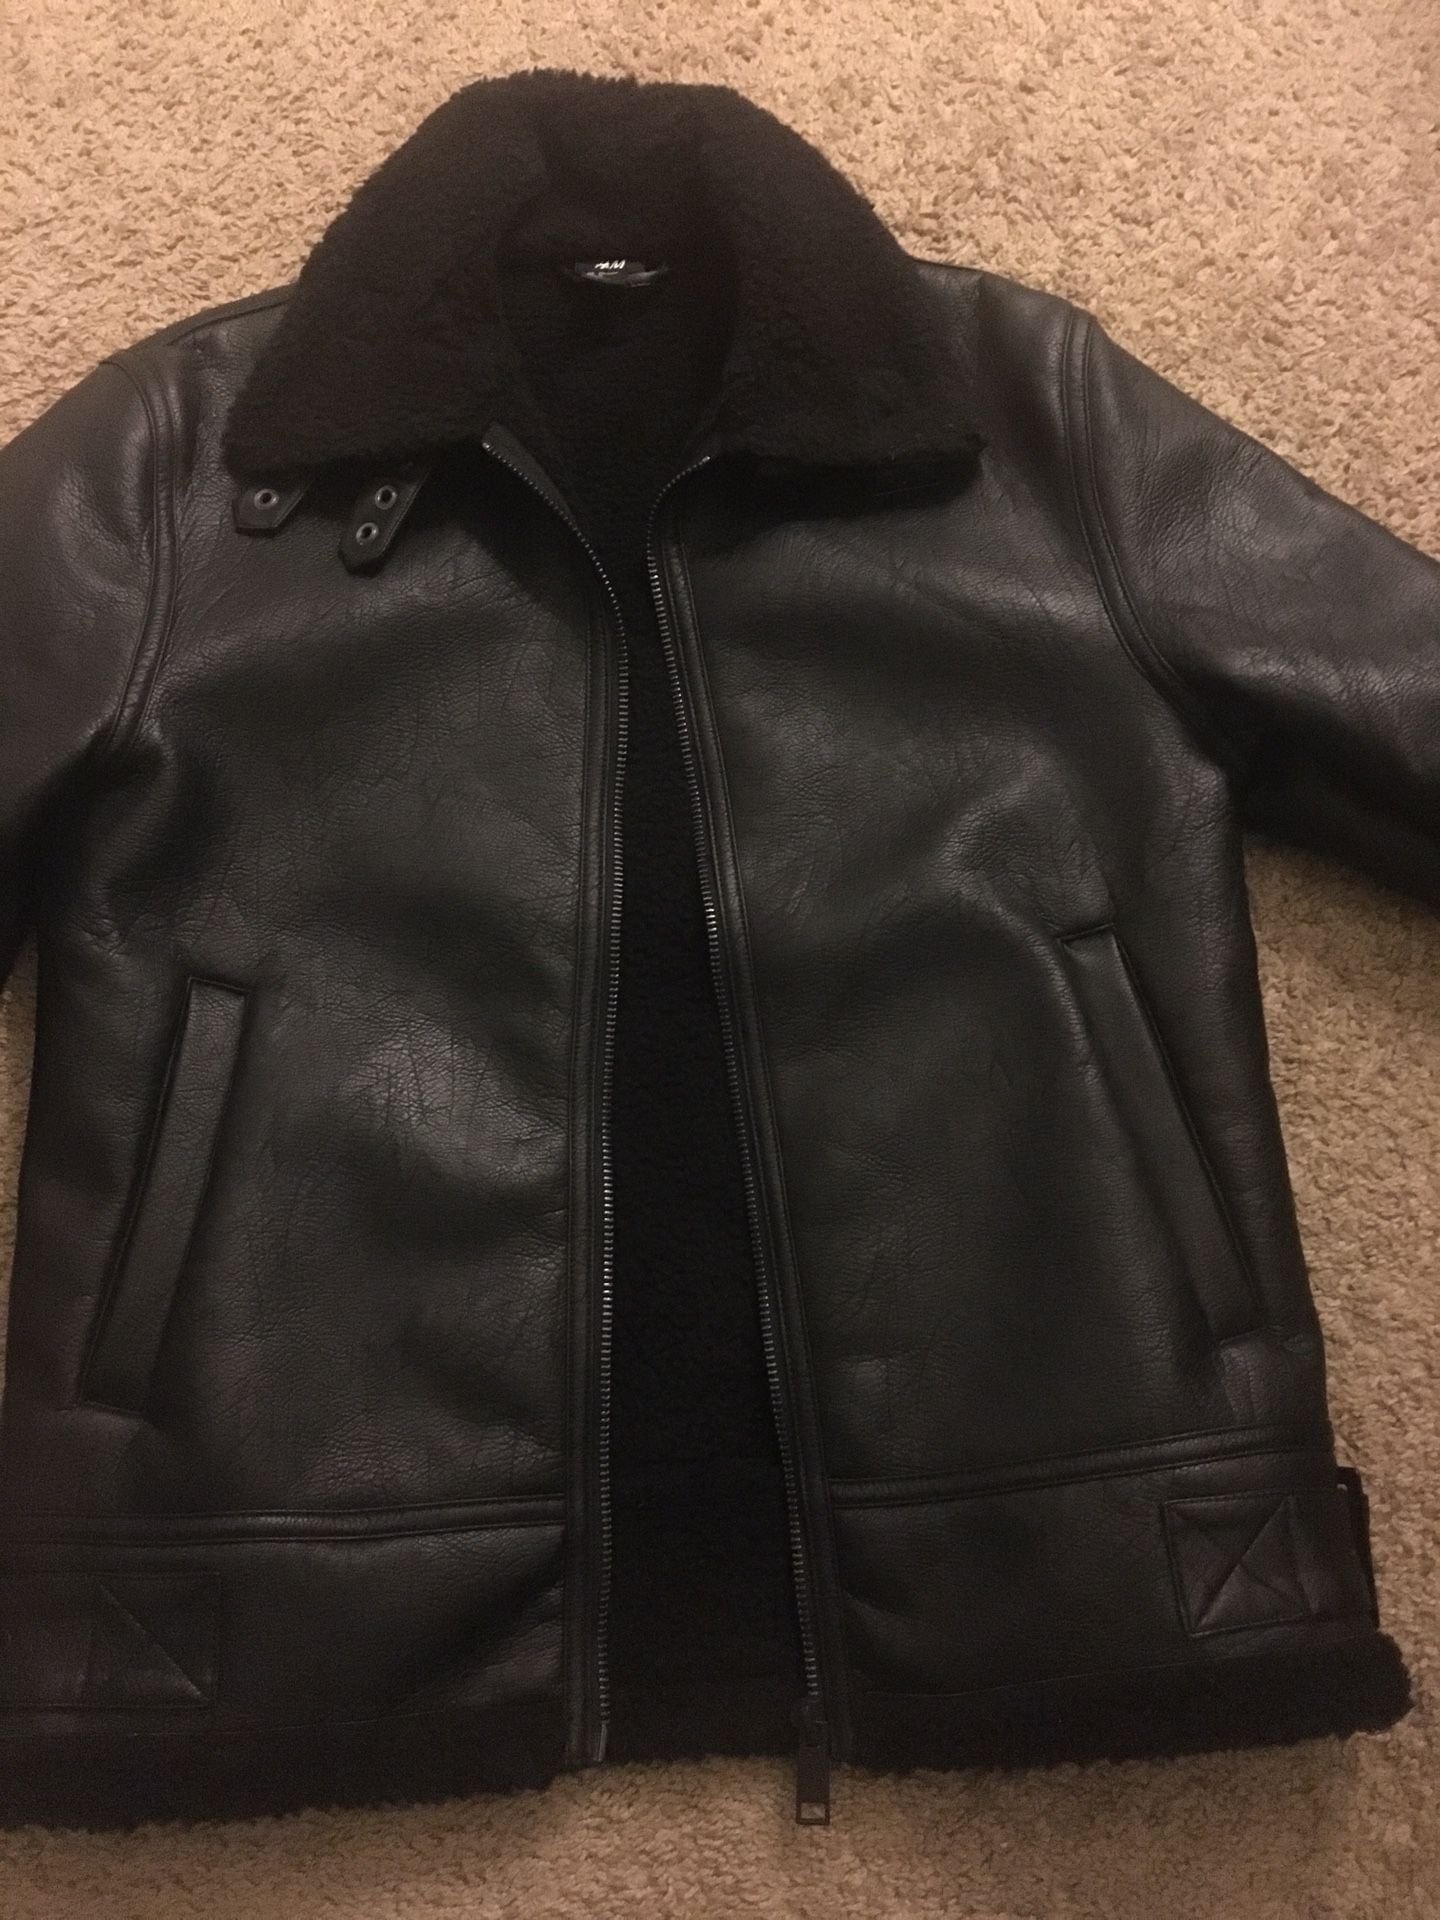 Men’s leather H&M fur jacket/coat (MEDIUM)